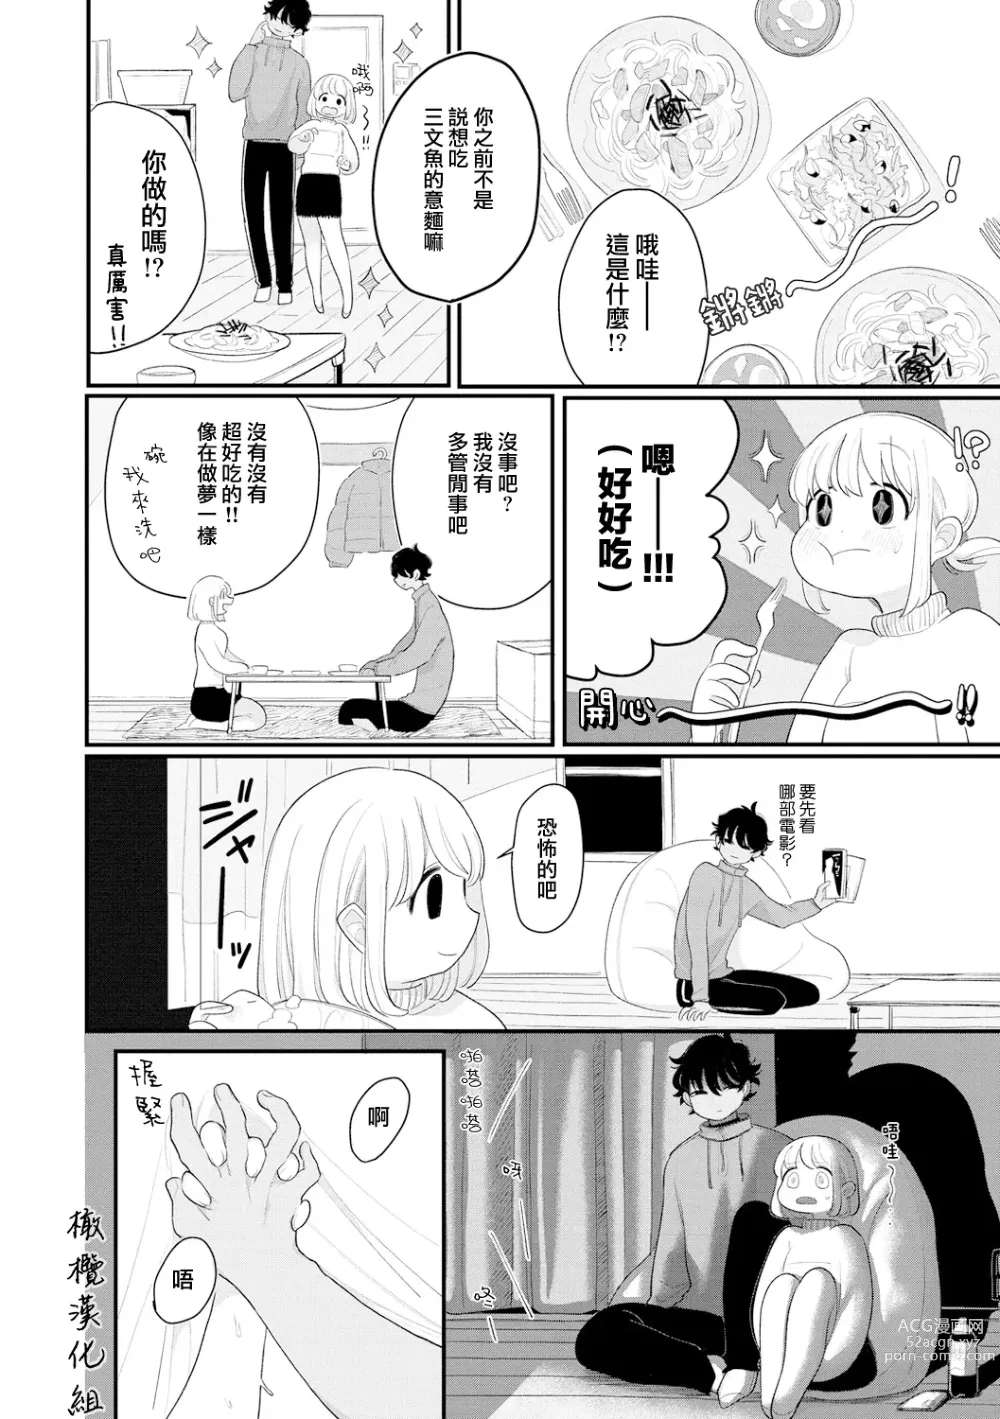 Page 2 of manga 好好相处吧